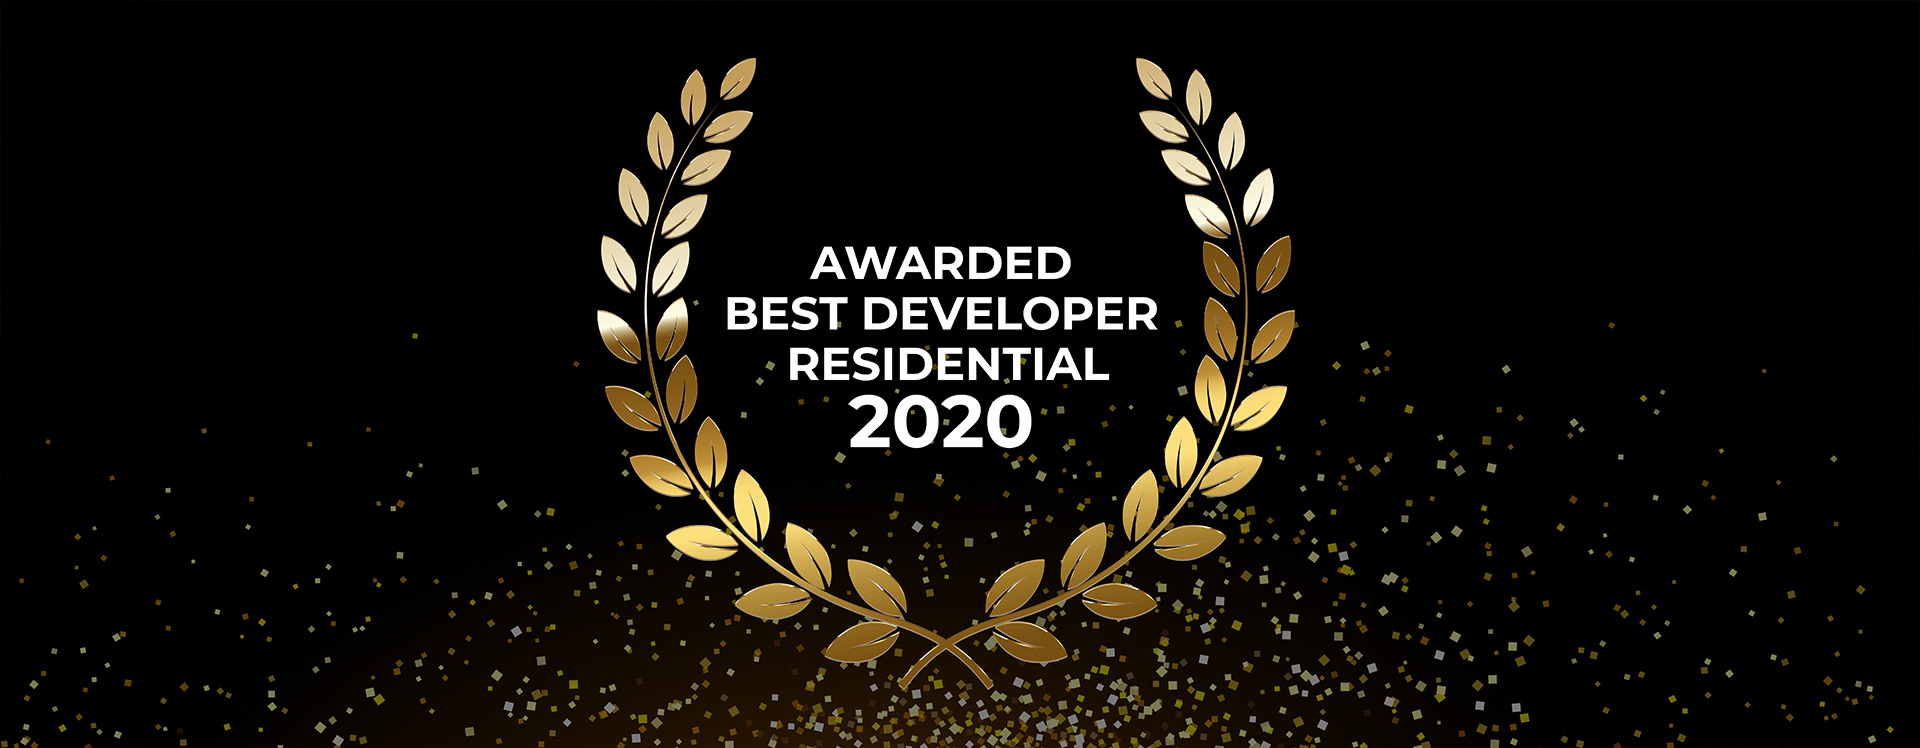 Best-Developer-2020-Award